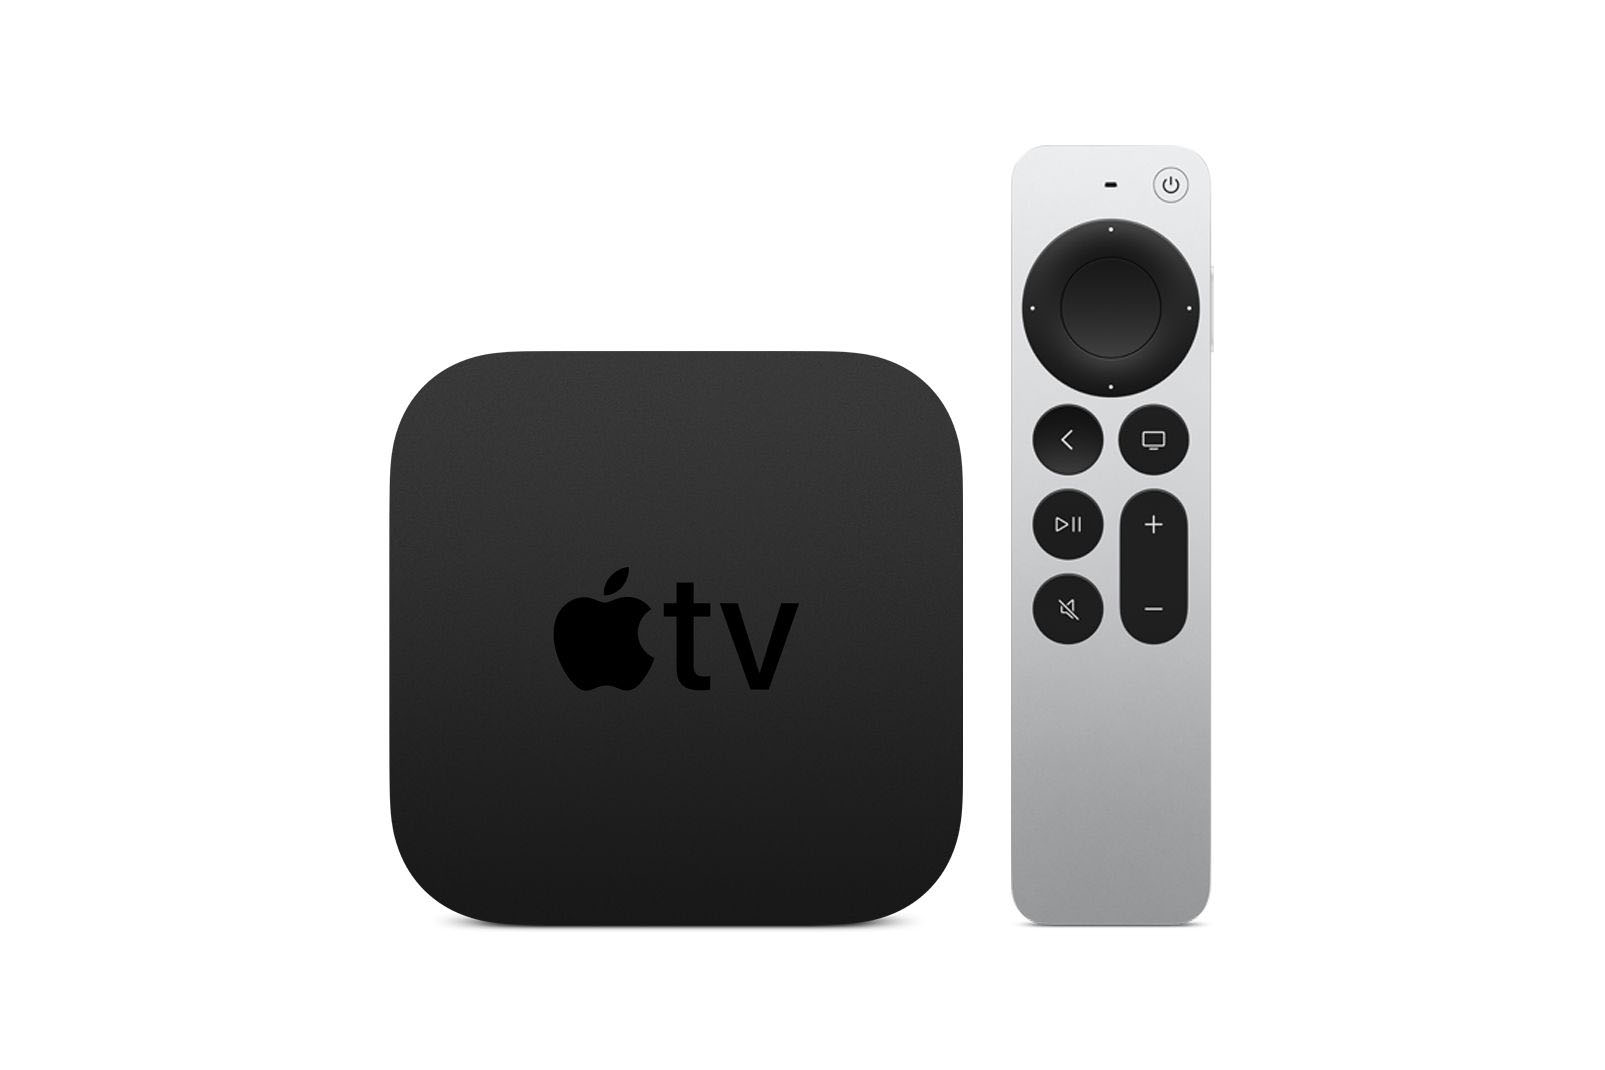  Apple TV met 4K -(2021)